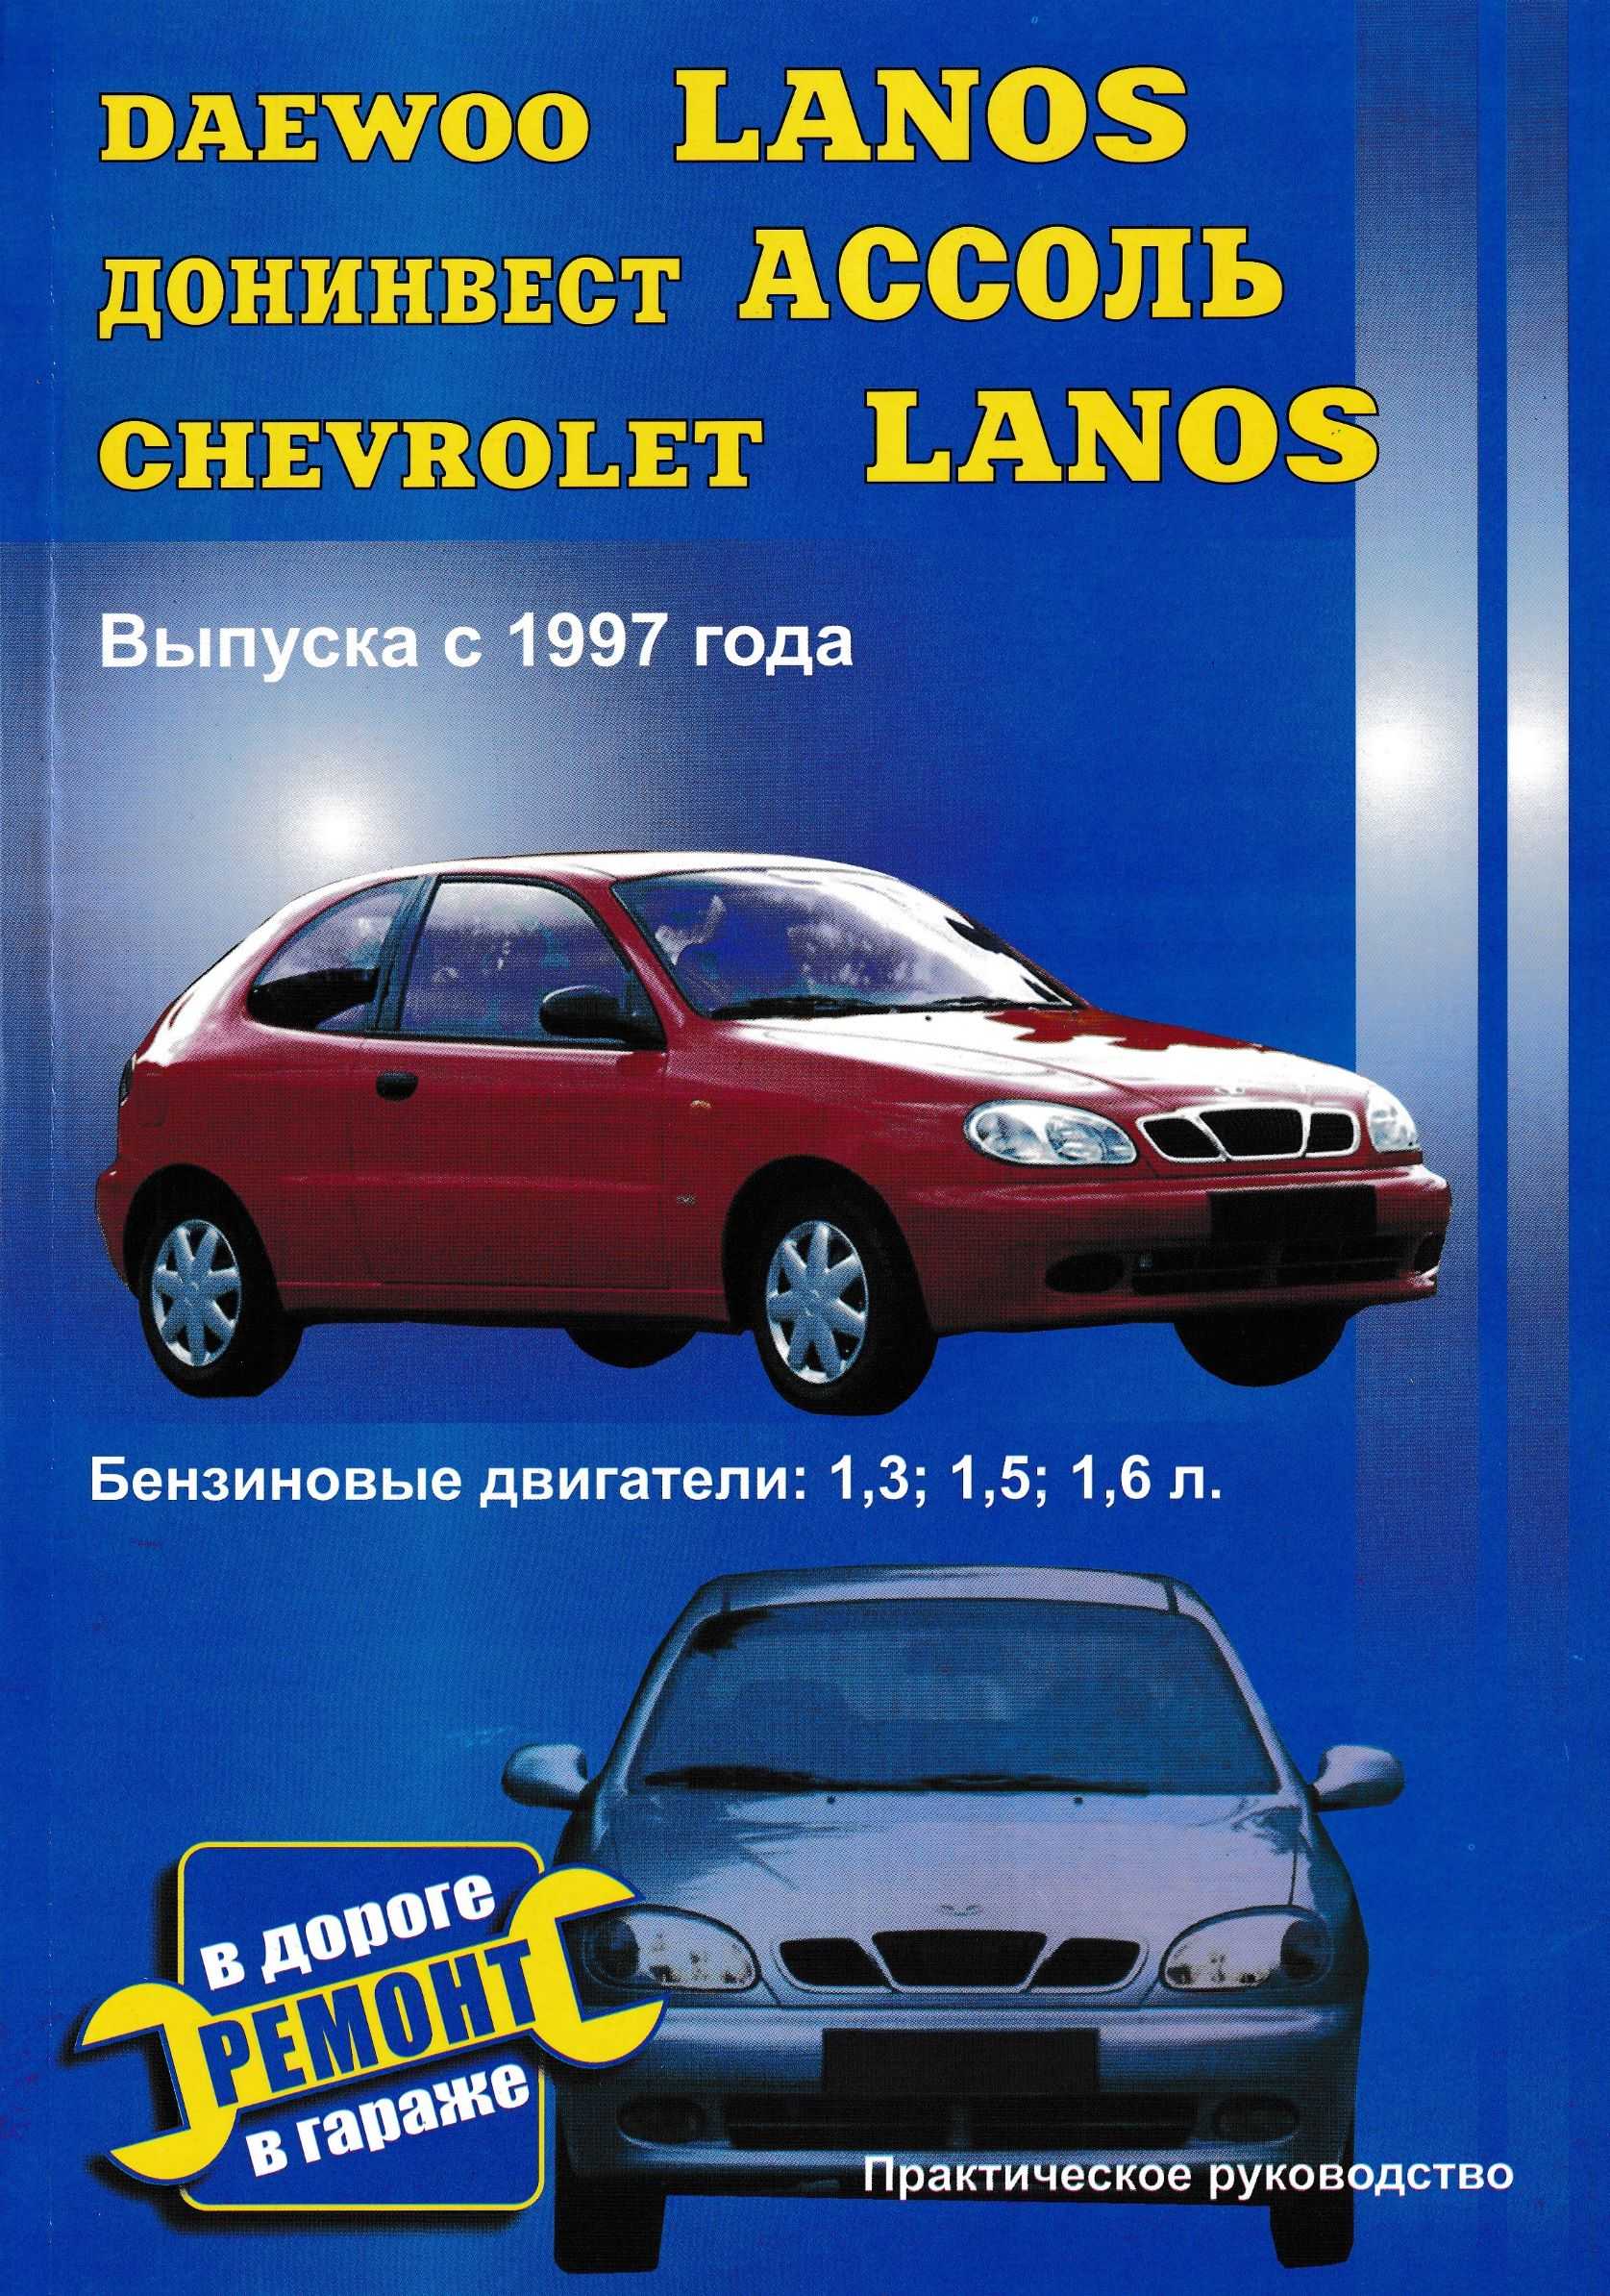 Chevrolet lanos 2005 руководство по эксплуатации